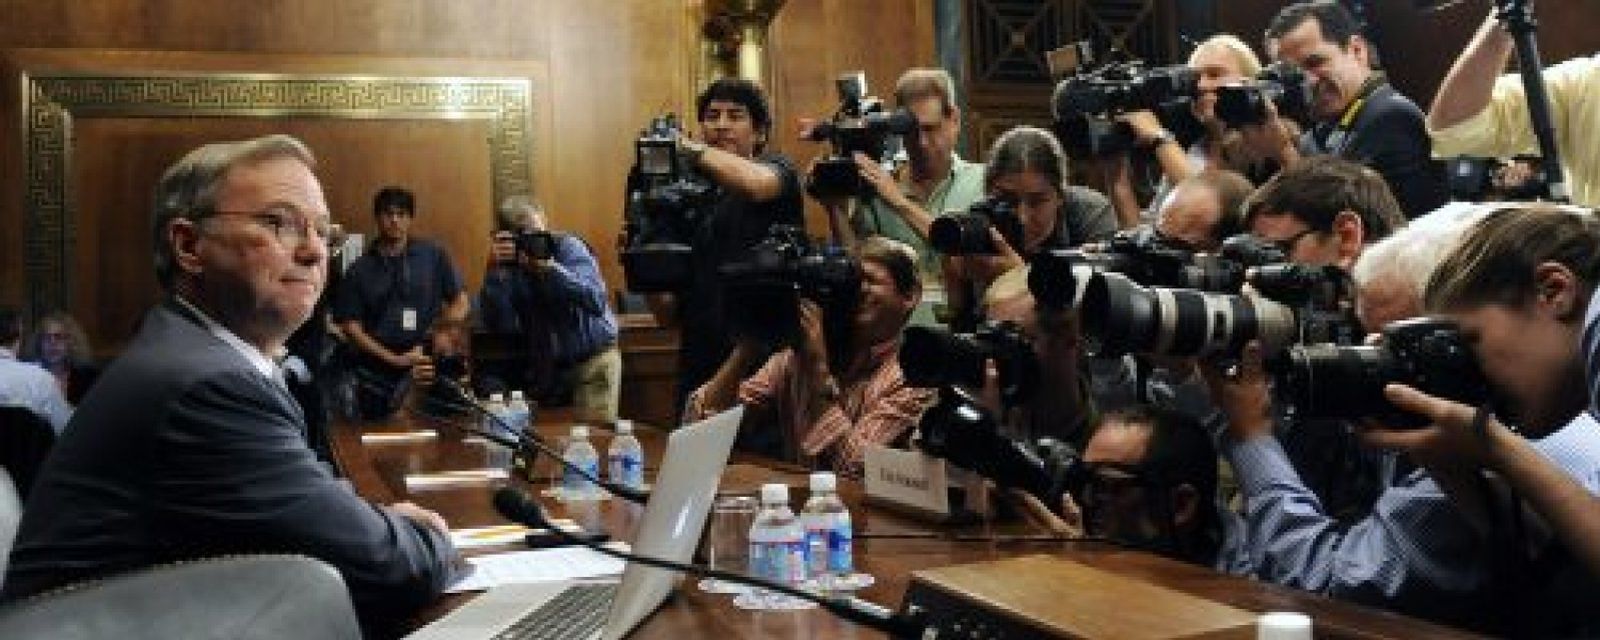 Foto: Schmidt contesta al Senado de EEUU: "Google no ha amañado los resultados de búsqueda"